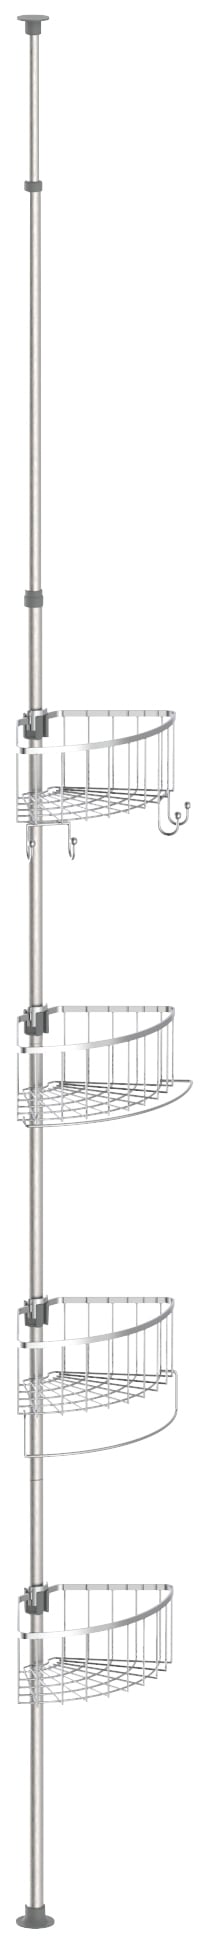 Eisl Duschregal "Teleskop", höhenverstellbar, 4 abnehmbare Körbe, Edelstahl, leichte Montage